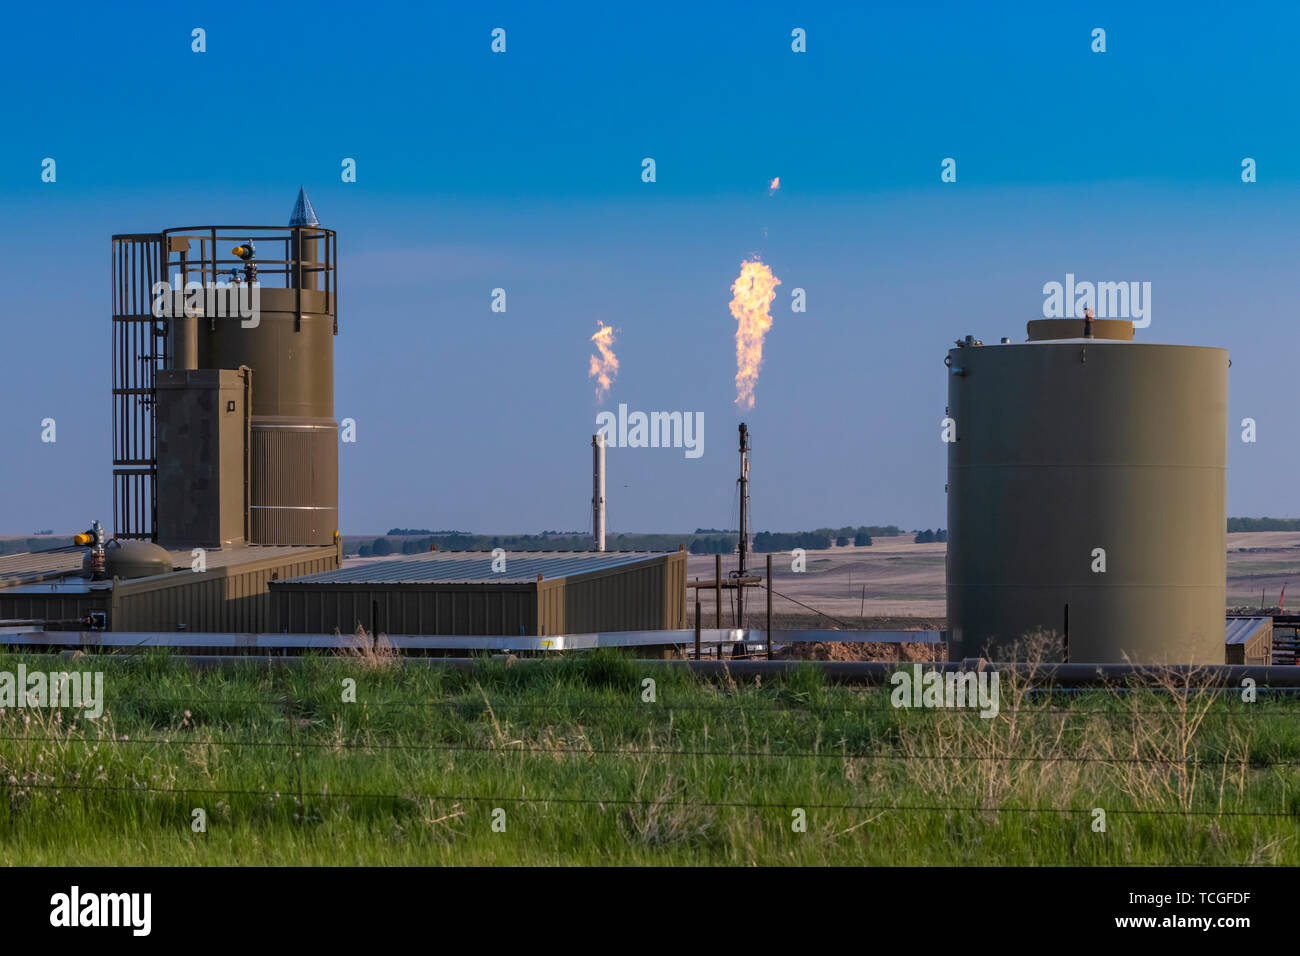 Flaring of natural gas in the Bakken Play oil fields near Williston, North Dakota, USA. Stock Photo